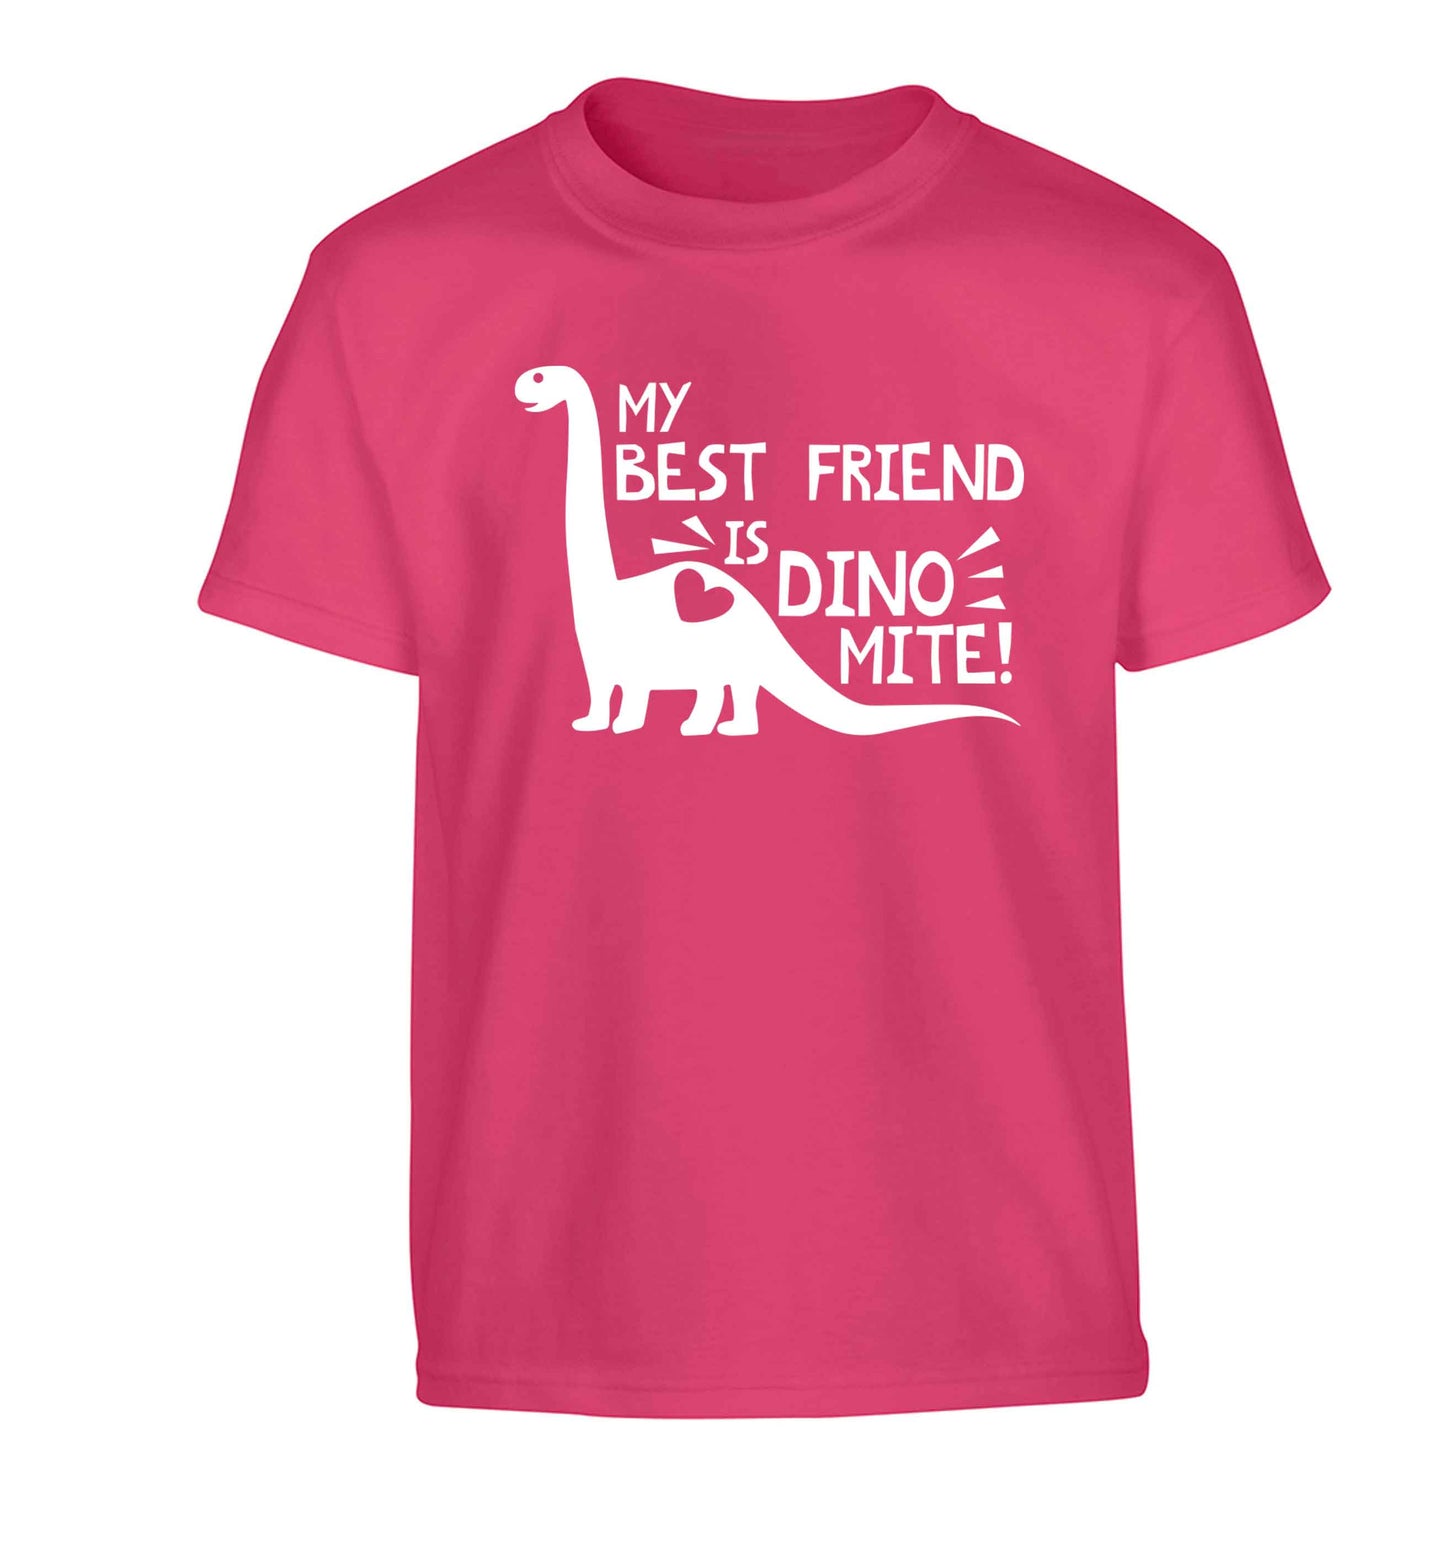 My best friend is dinomite! Children's pink Tshirt 12-13 Years